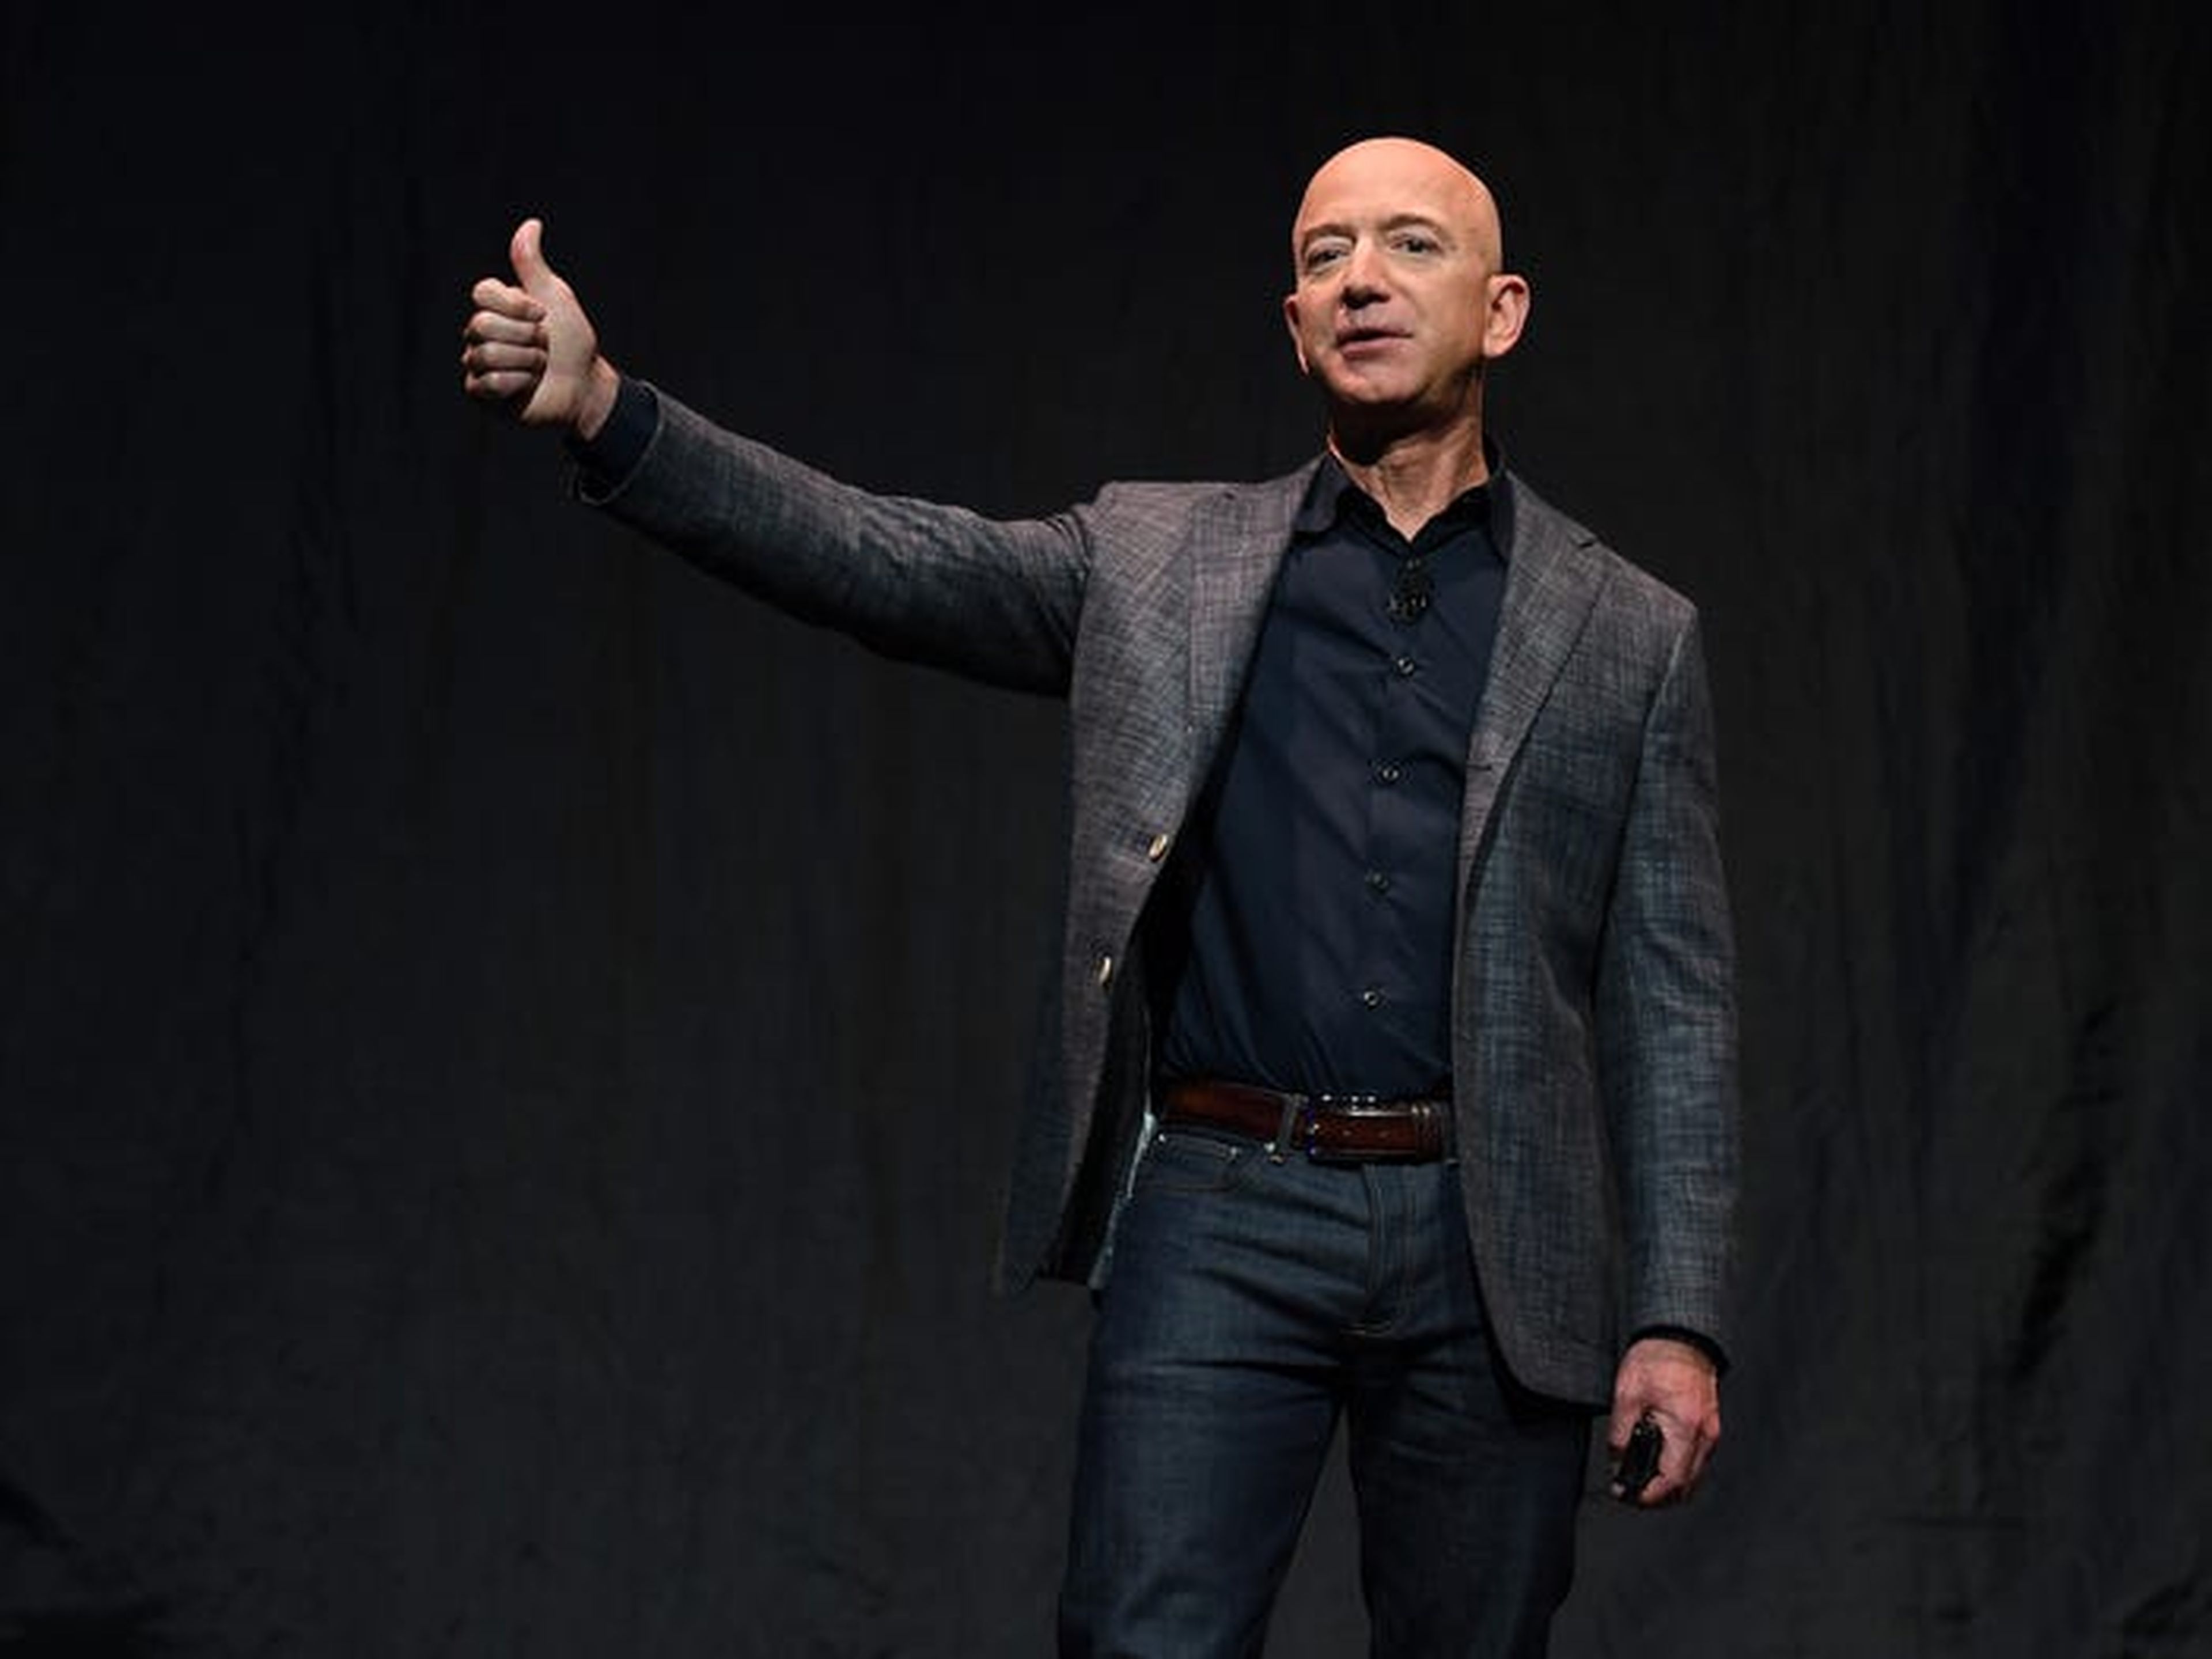 Lo más importante es que Wall Street parece confiar en el director general de Amazon, Jeff Bezos, y en su equipo para realizar la inversión a largo plazo adecuada, dada la trayectoria de la empresa.